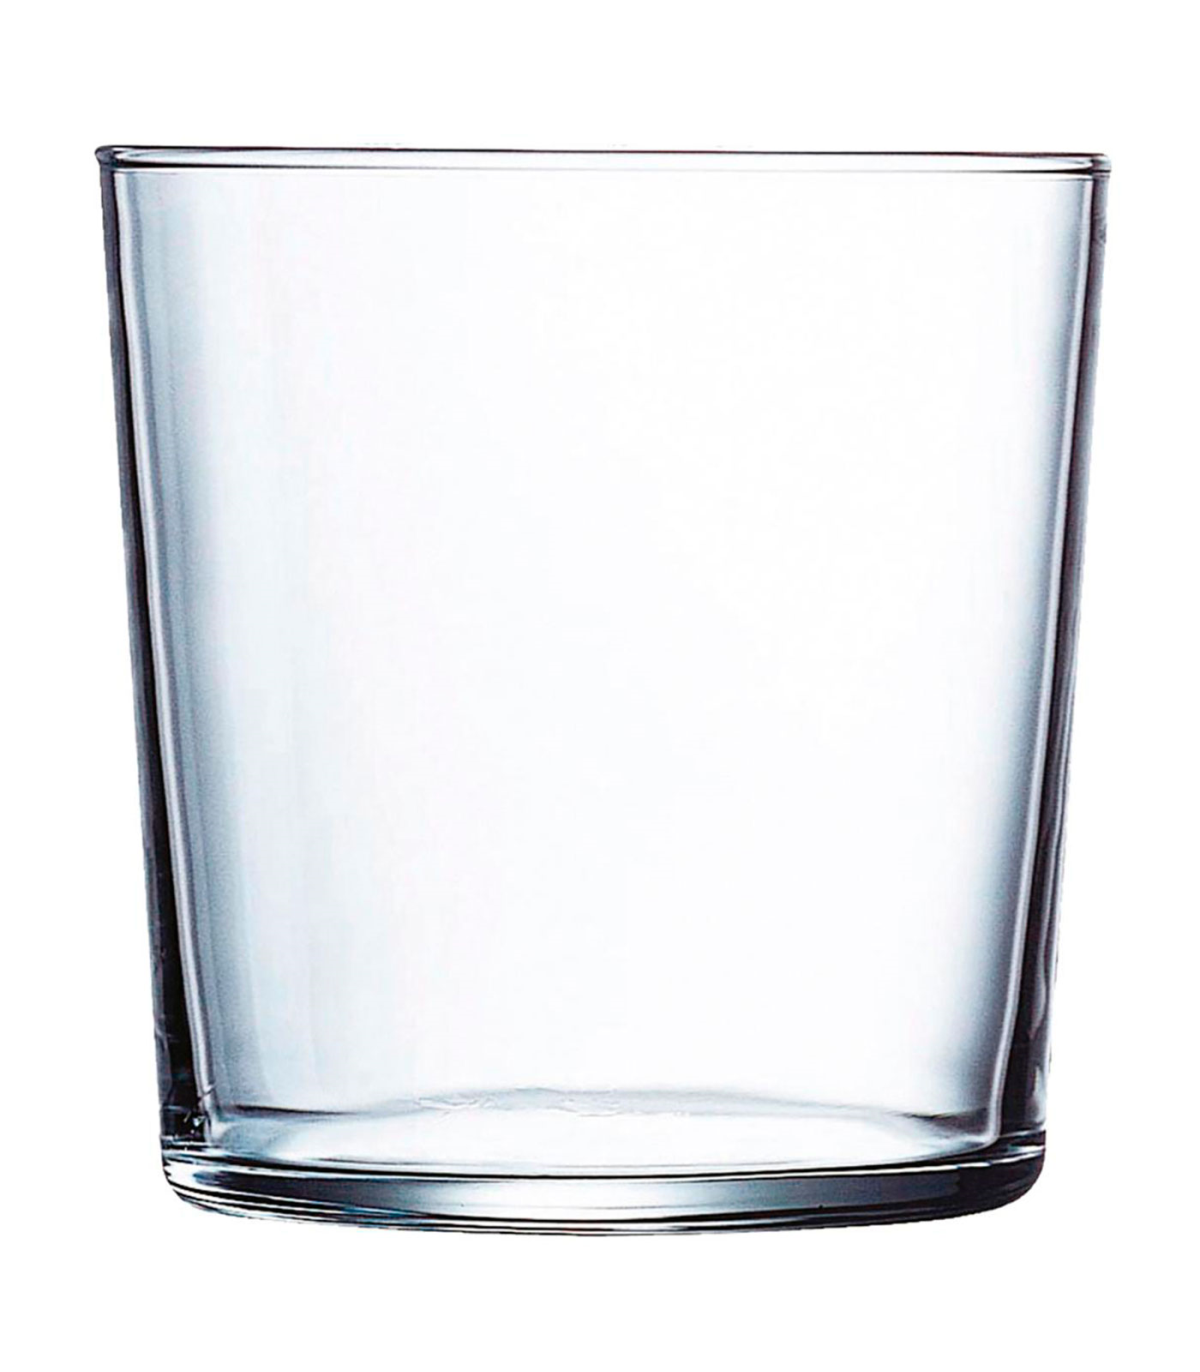 Tradineur - Set de 12 vasos de cristal modelo Ruta, vasos para agua, bebidas, resistentes, para lavavajillas (36